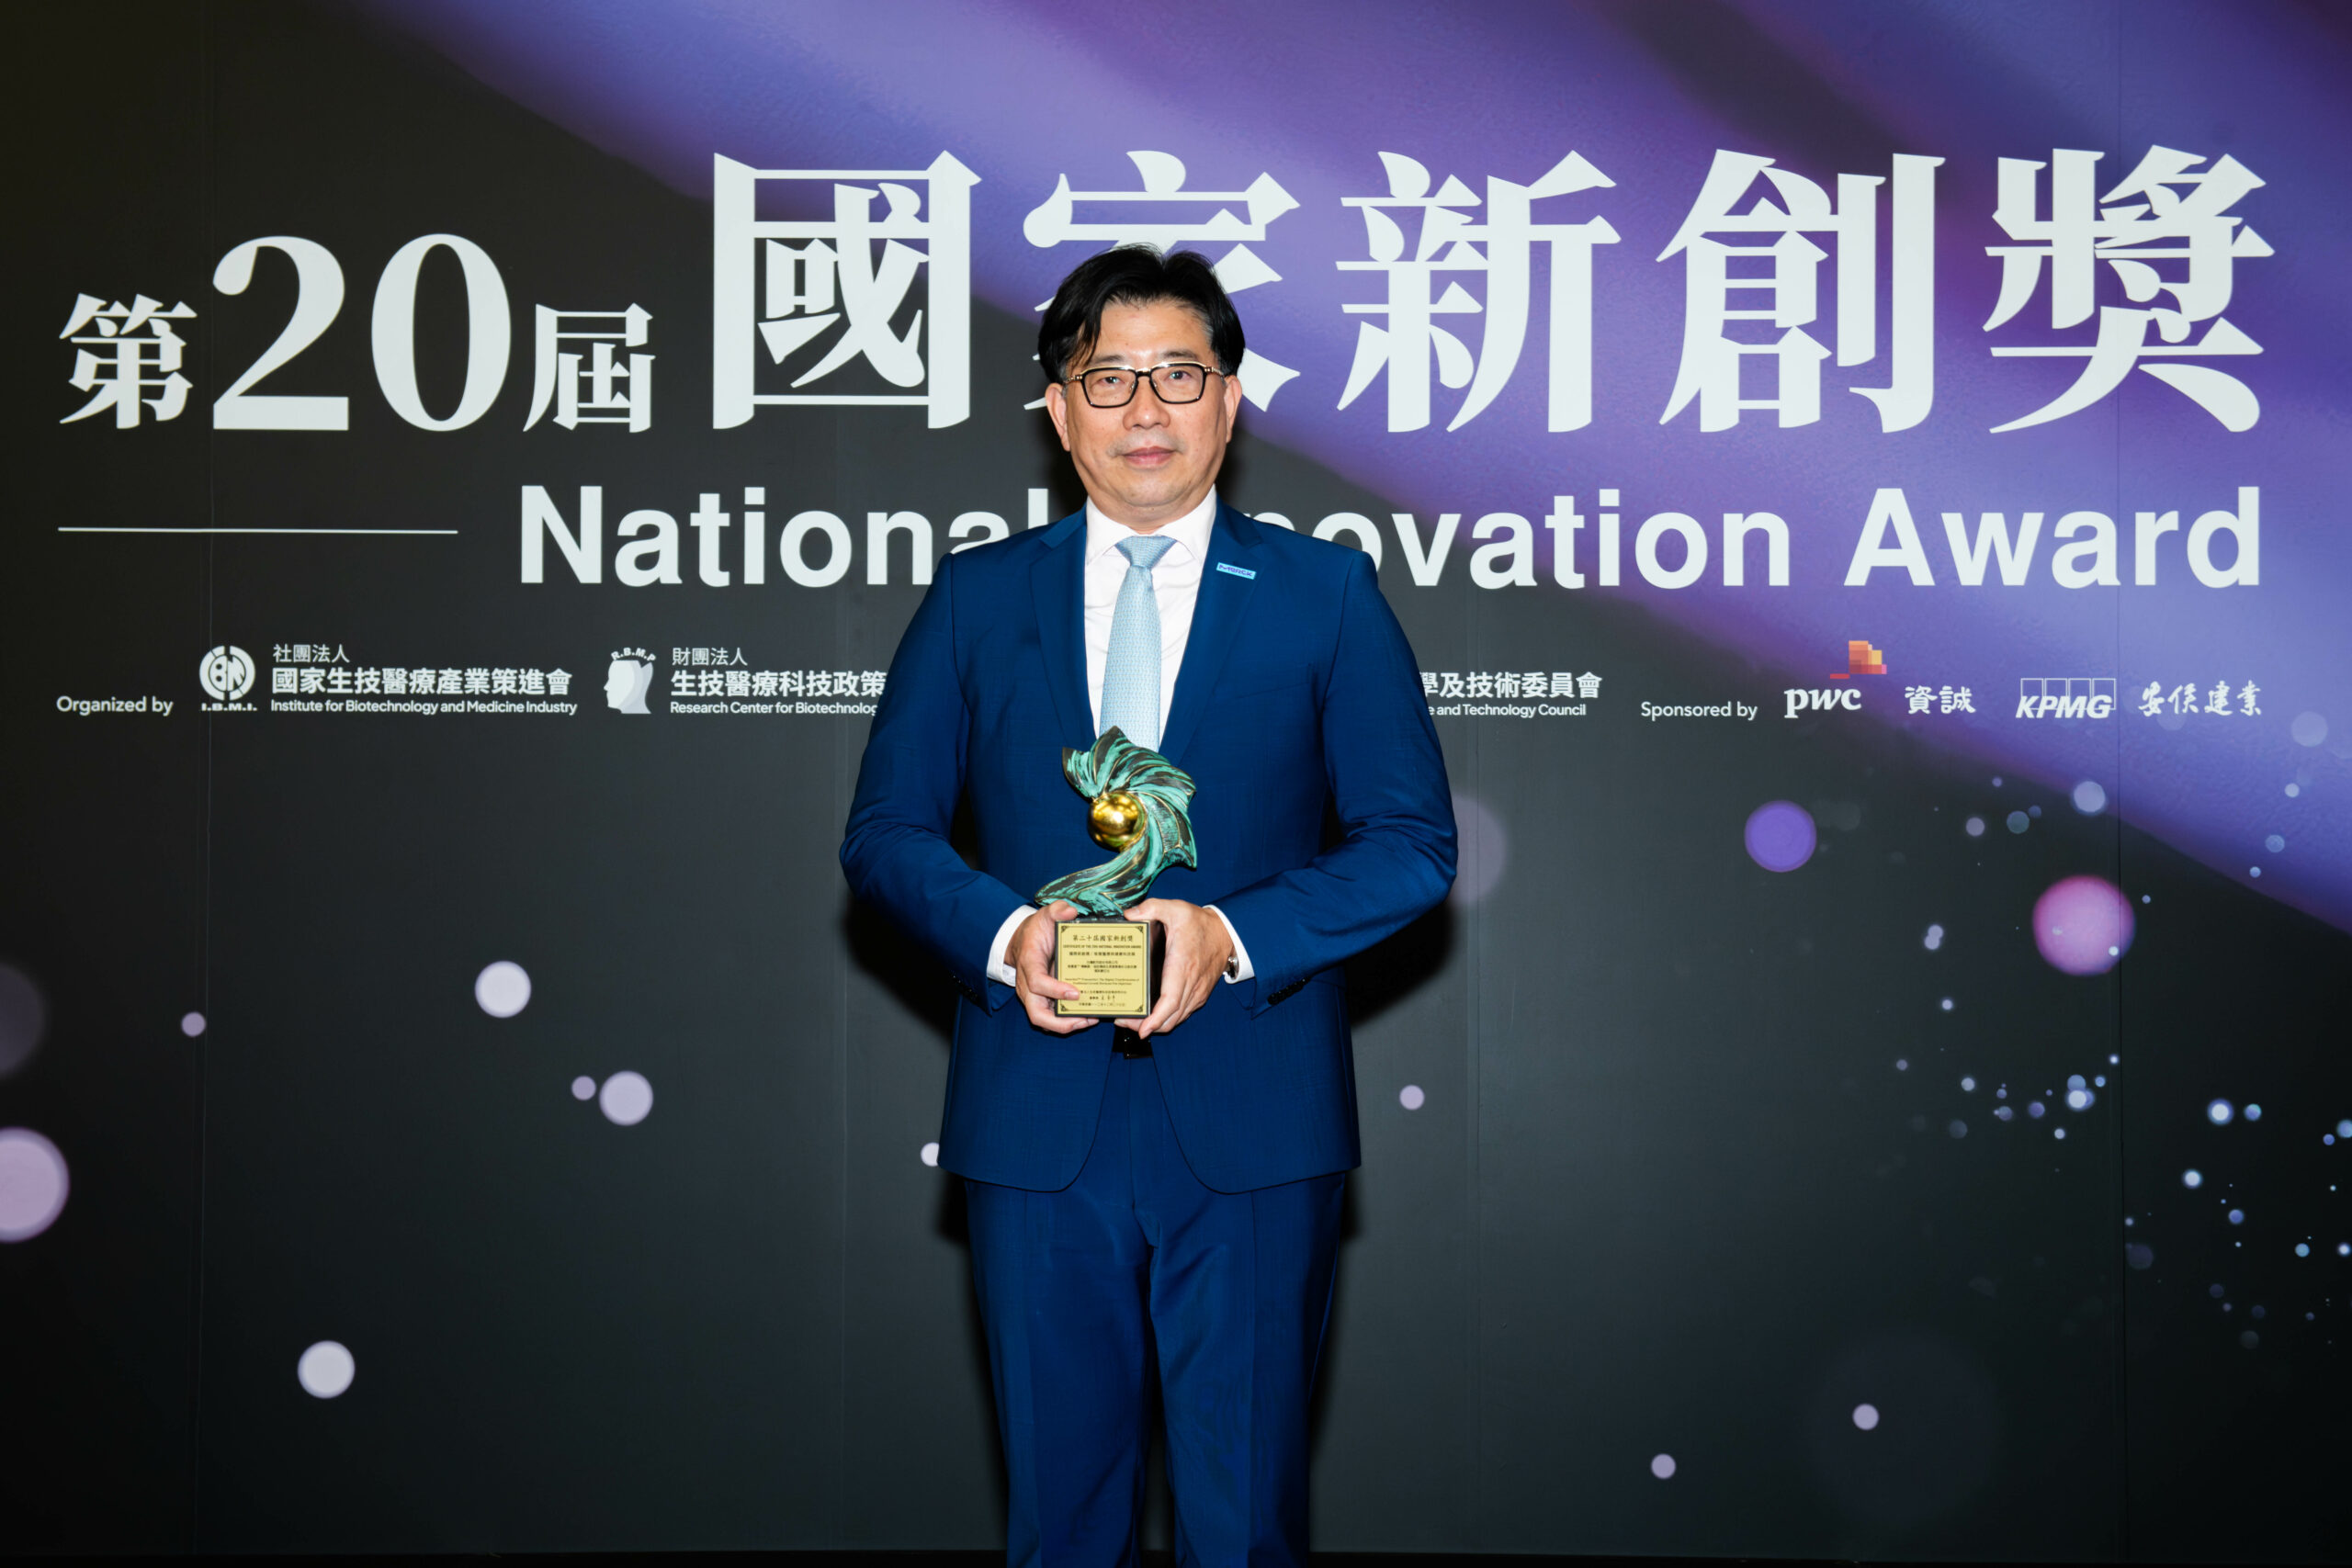 台灣默克醫療保健事業體，榮獲第20屆「國家新創獎-智慧醫療與健康科技」獎項，由集團董事長李俊隆博士代表領獎。